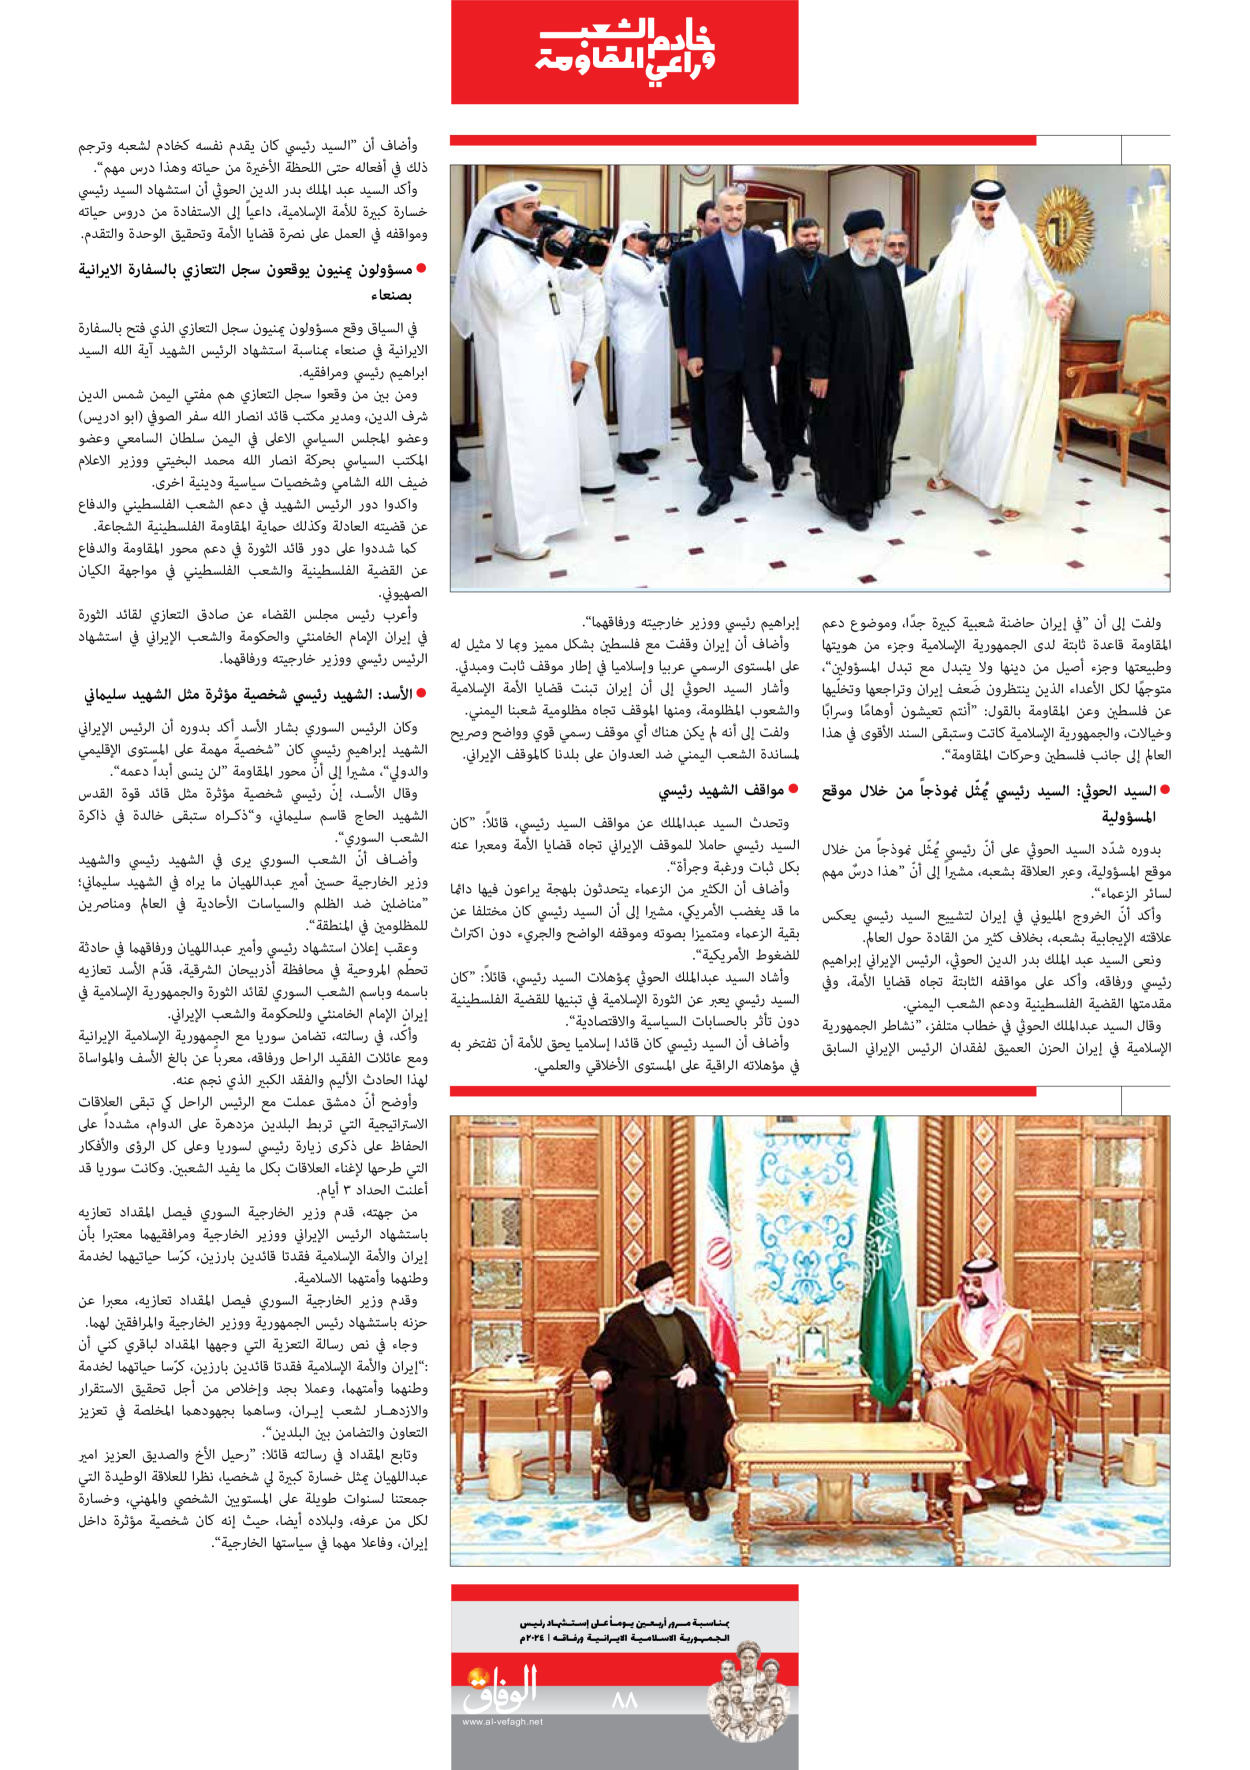 صحیفة ایران الدولیة الوفاق - ملحق ویژه نامه چهلم شهید رییسی - ٢٩ يونيو ٢٠٢٤ - الصفحة ۸۸